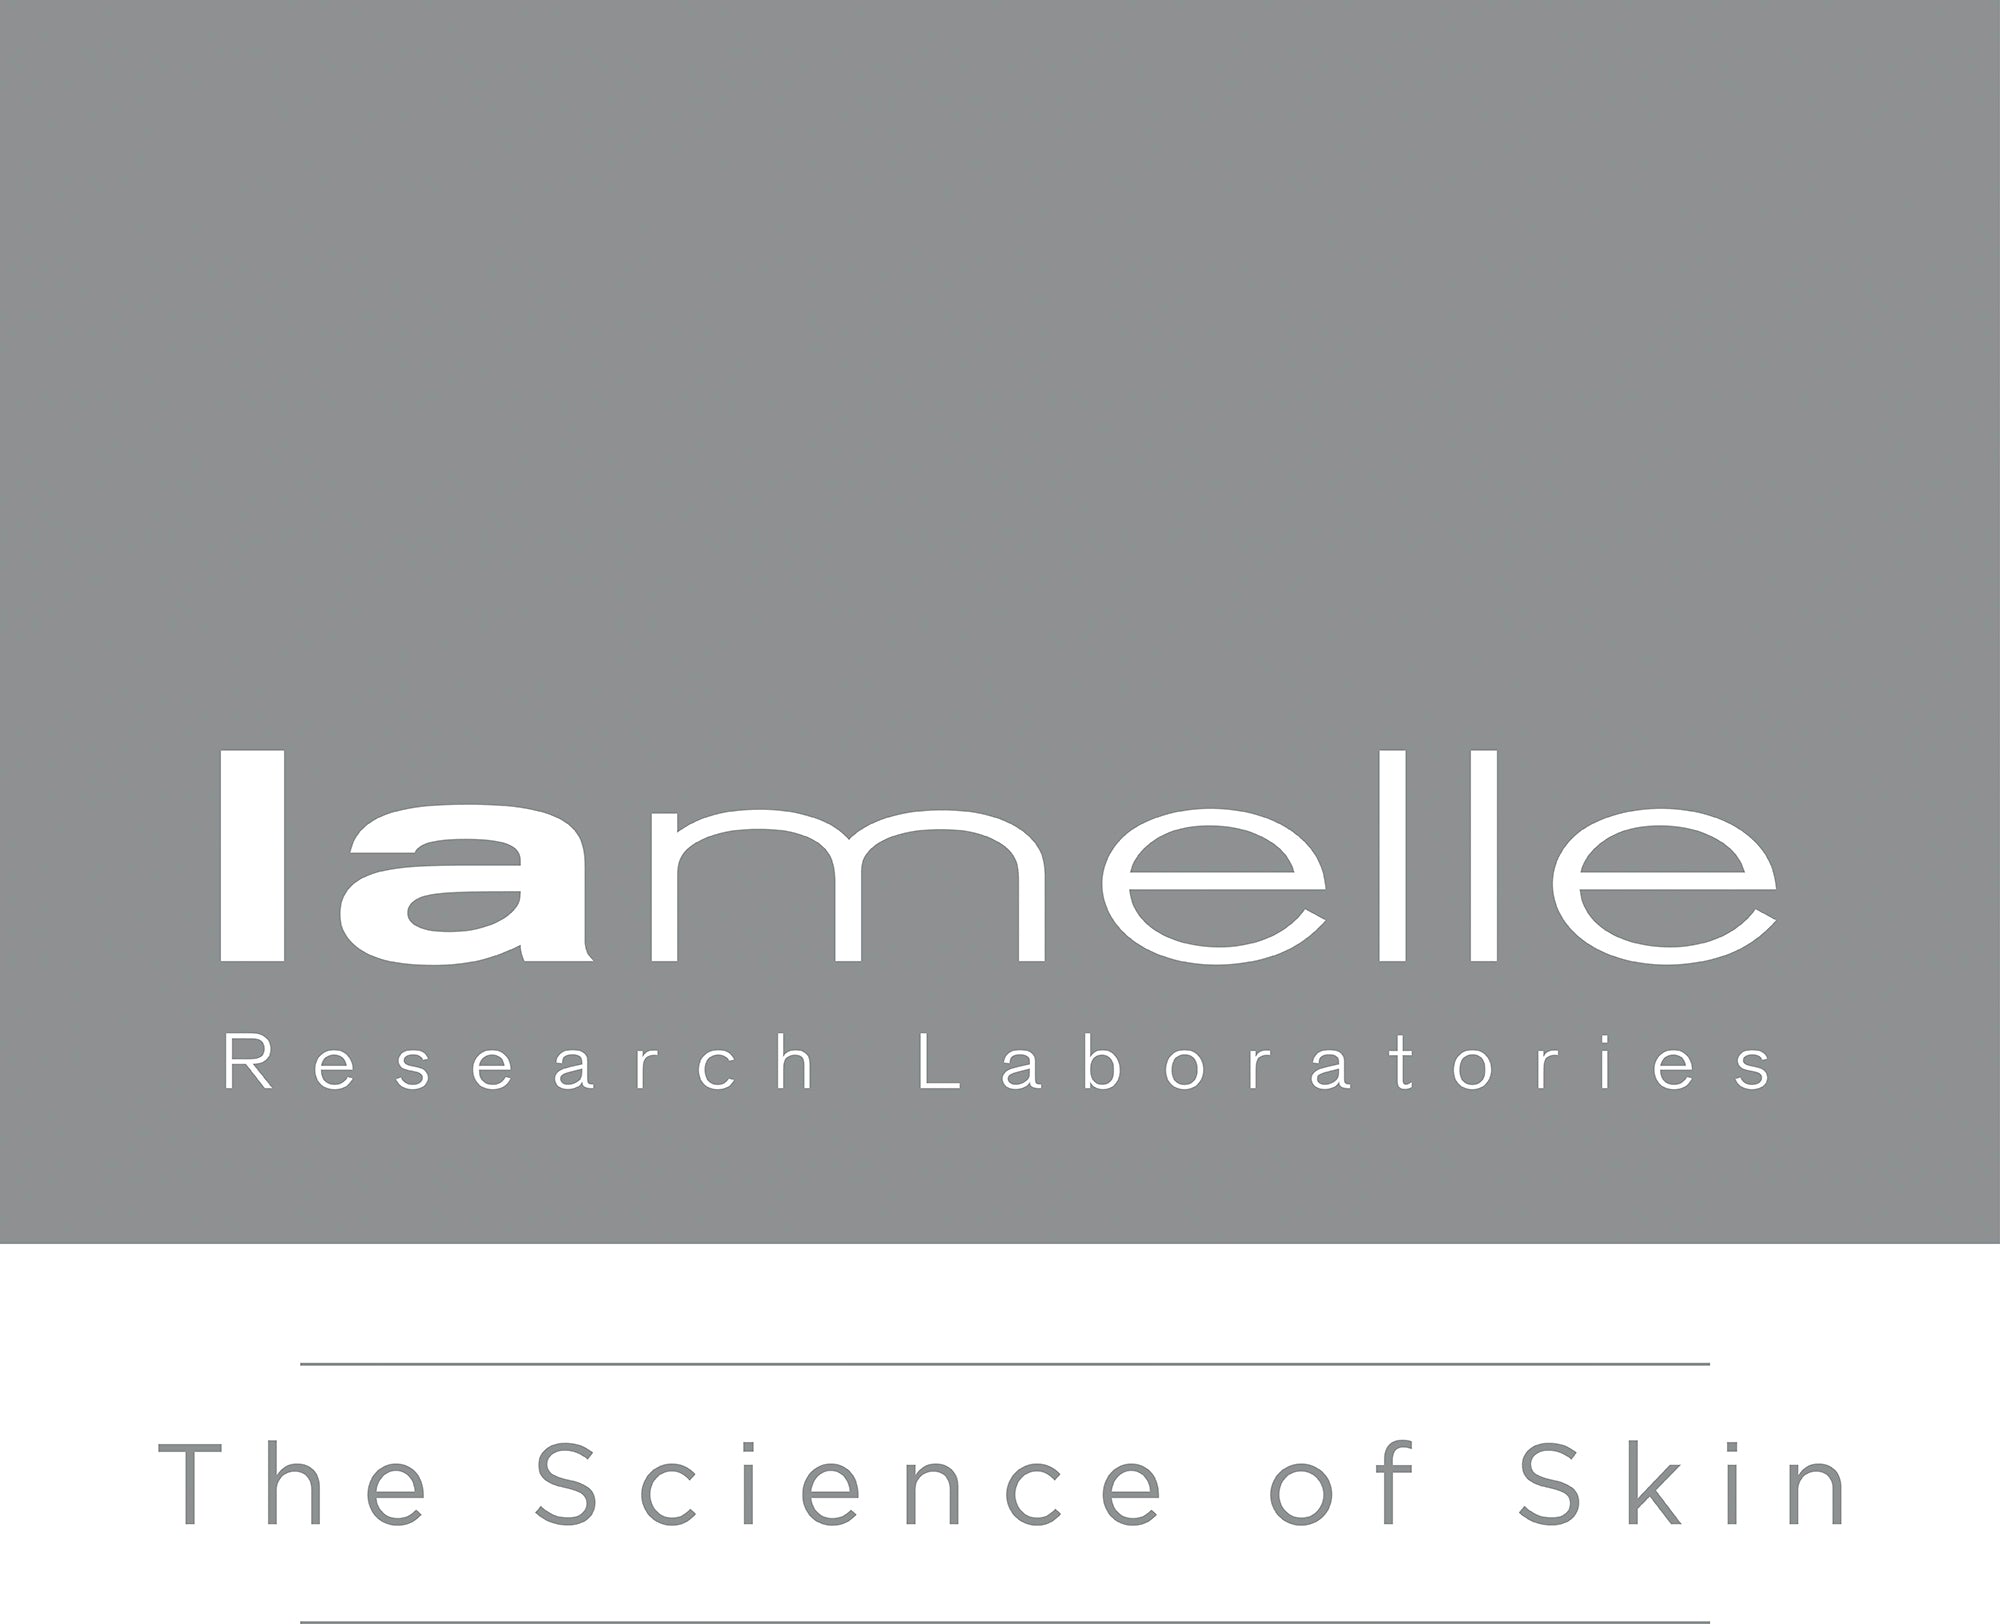 Serra Restore Cream | Lamelle